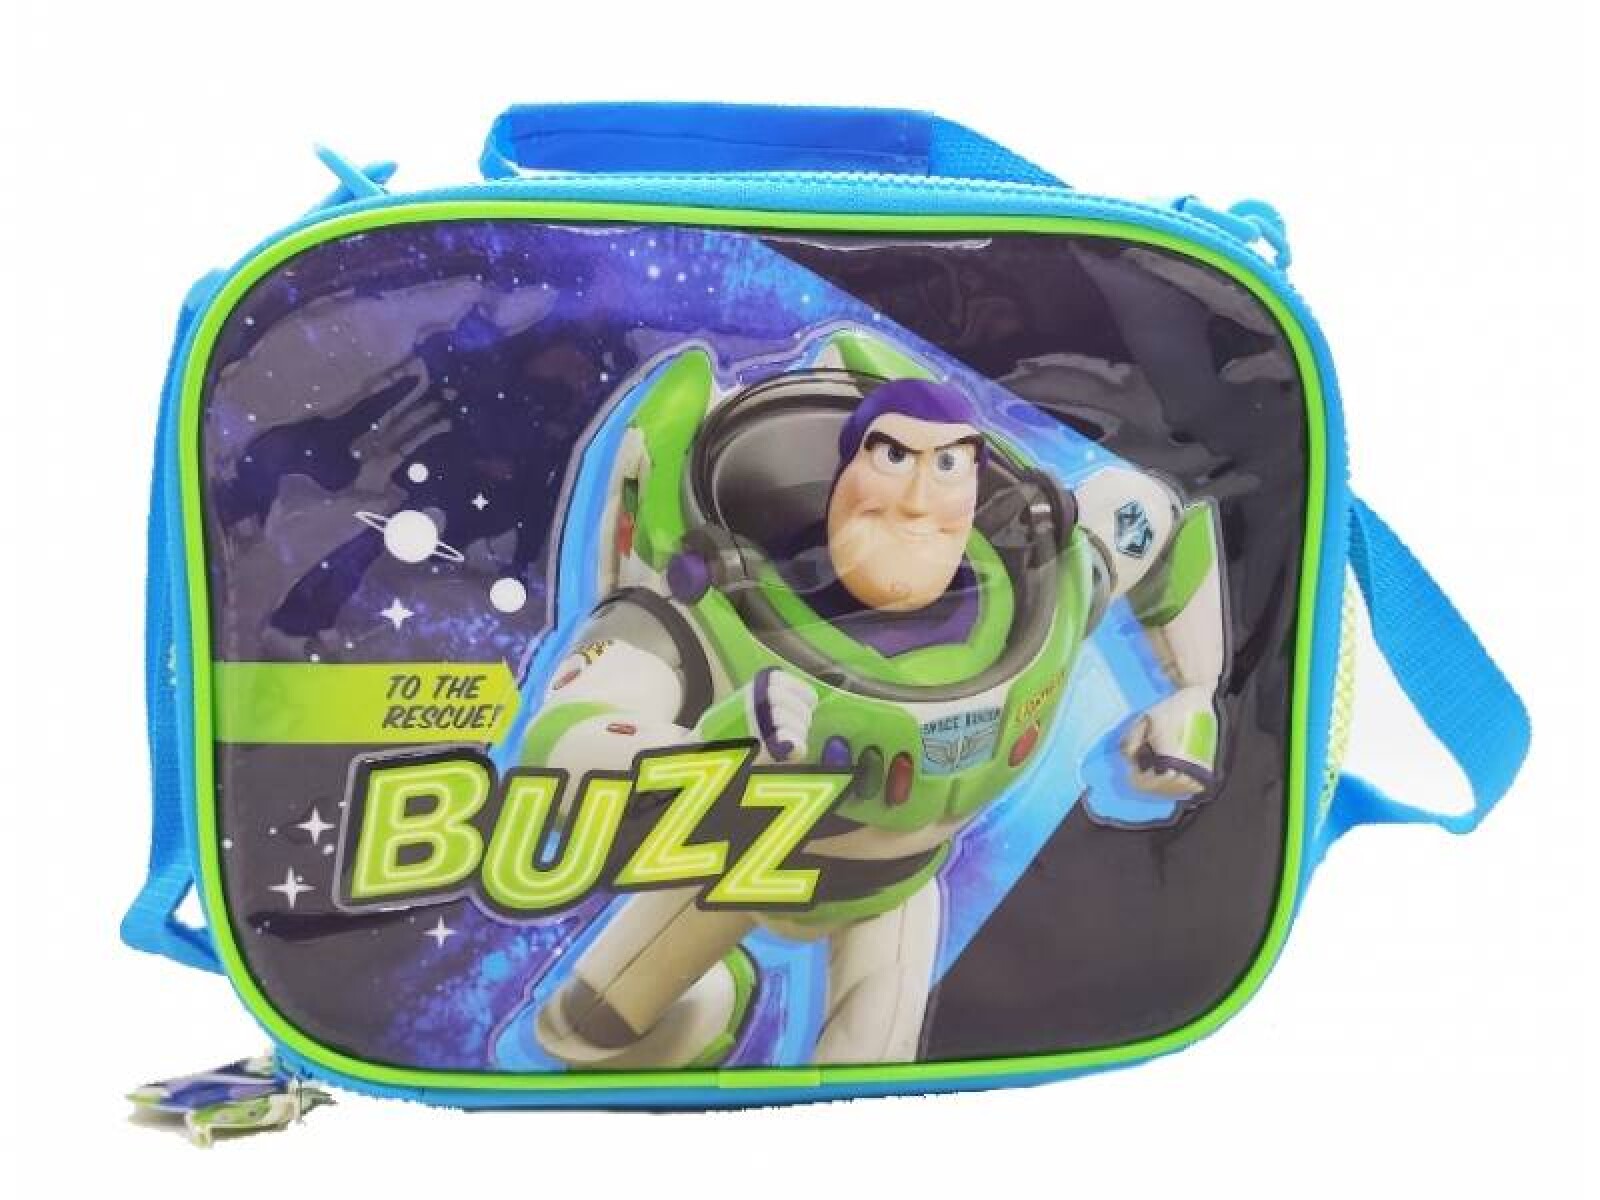 Lonchera Buzz Toy Story - 001 